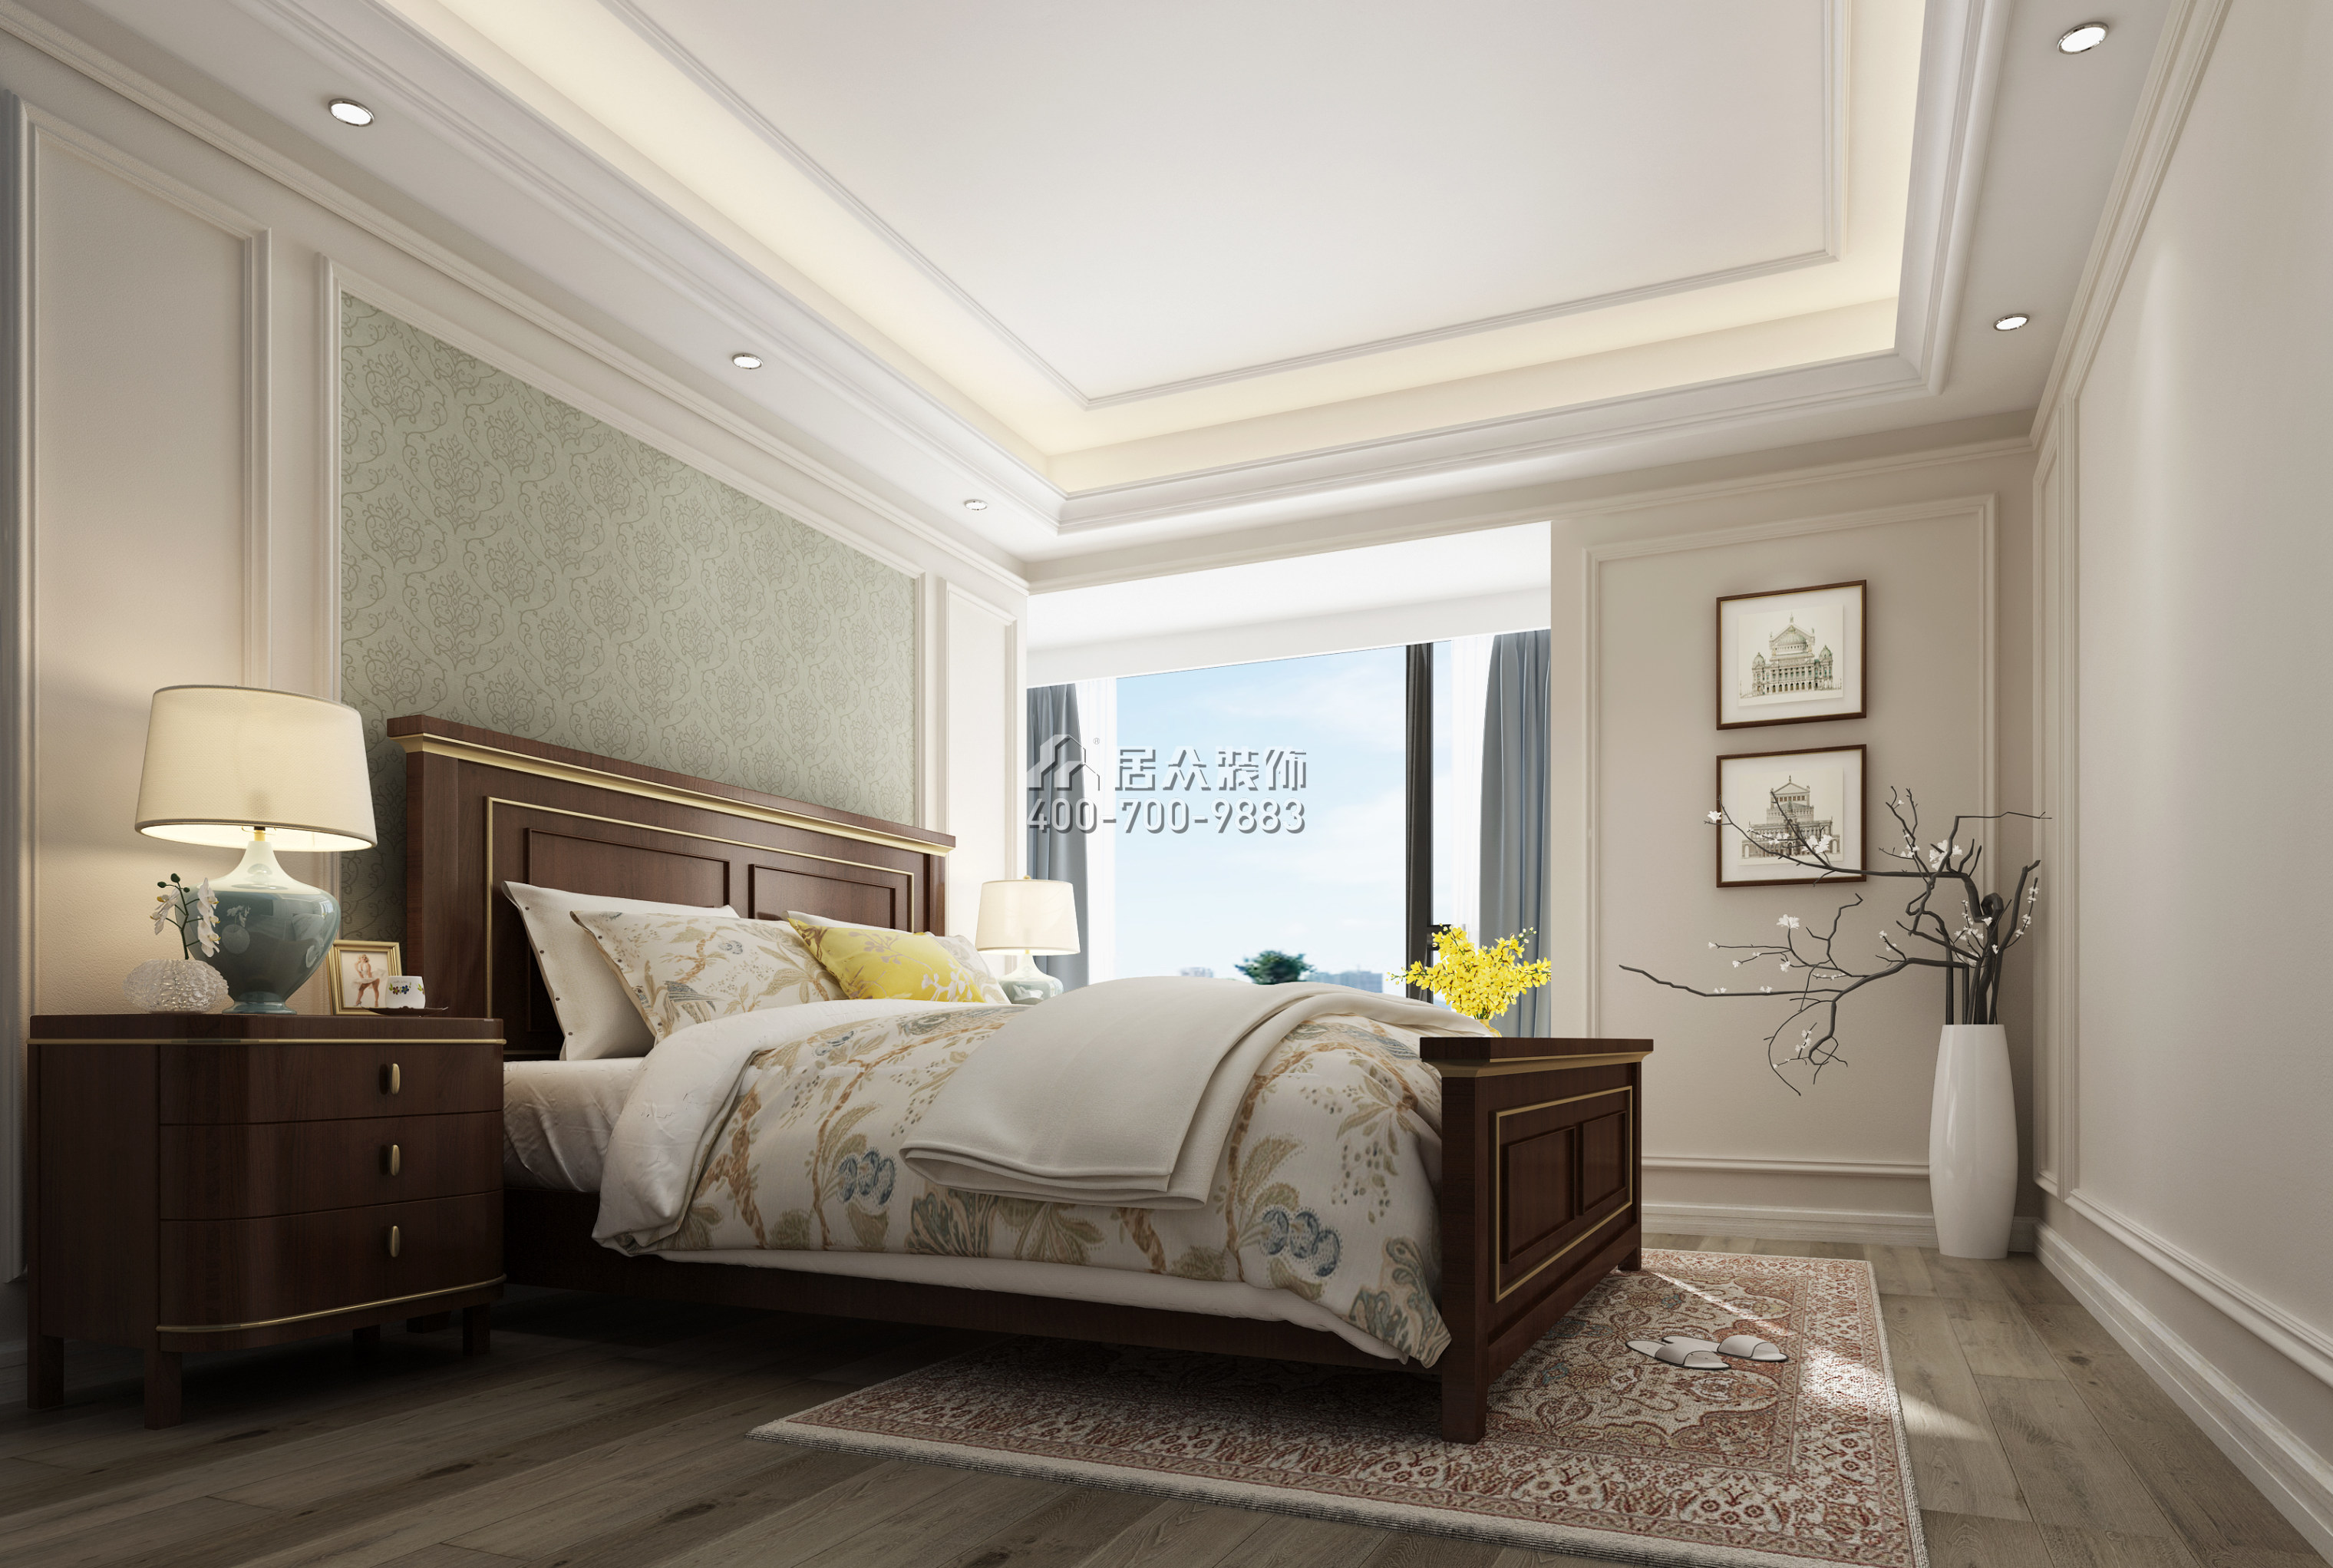 新城新世界130平方米美式风格平层户型卧室装修效果图